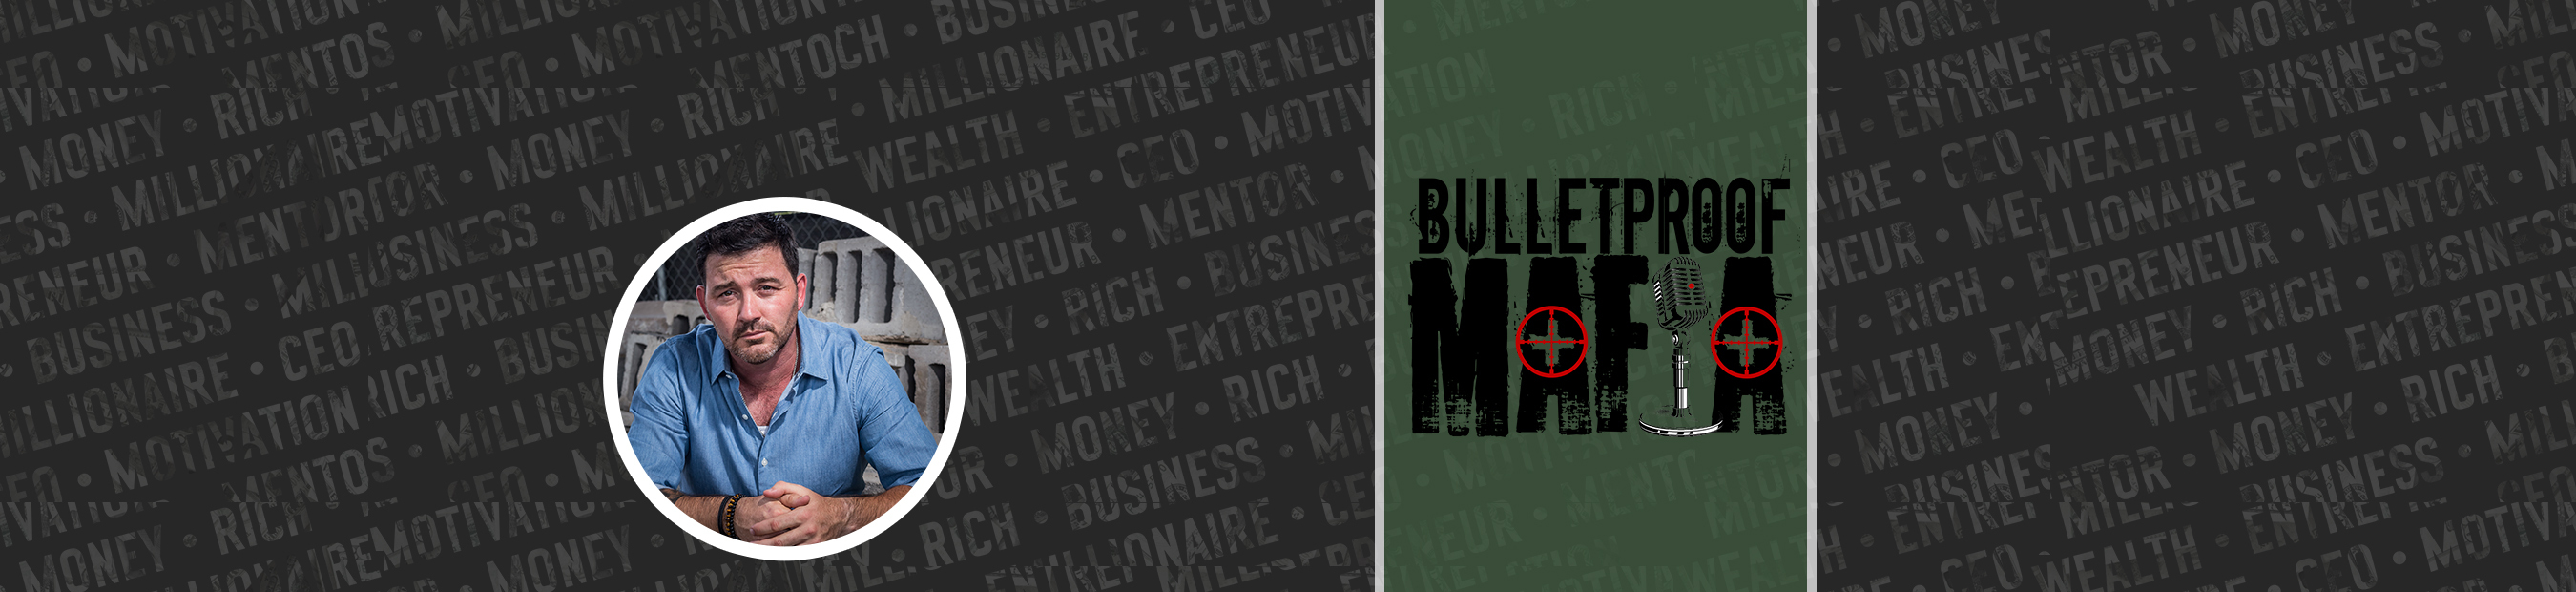 Bulletproof Mafia header image 1